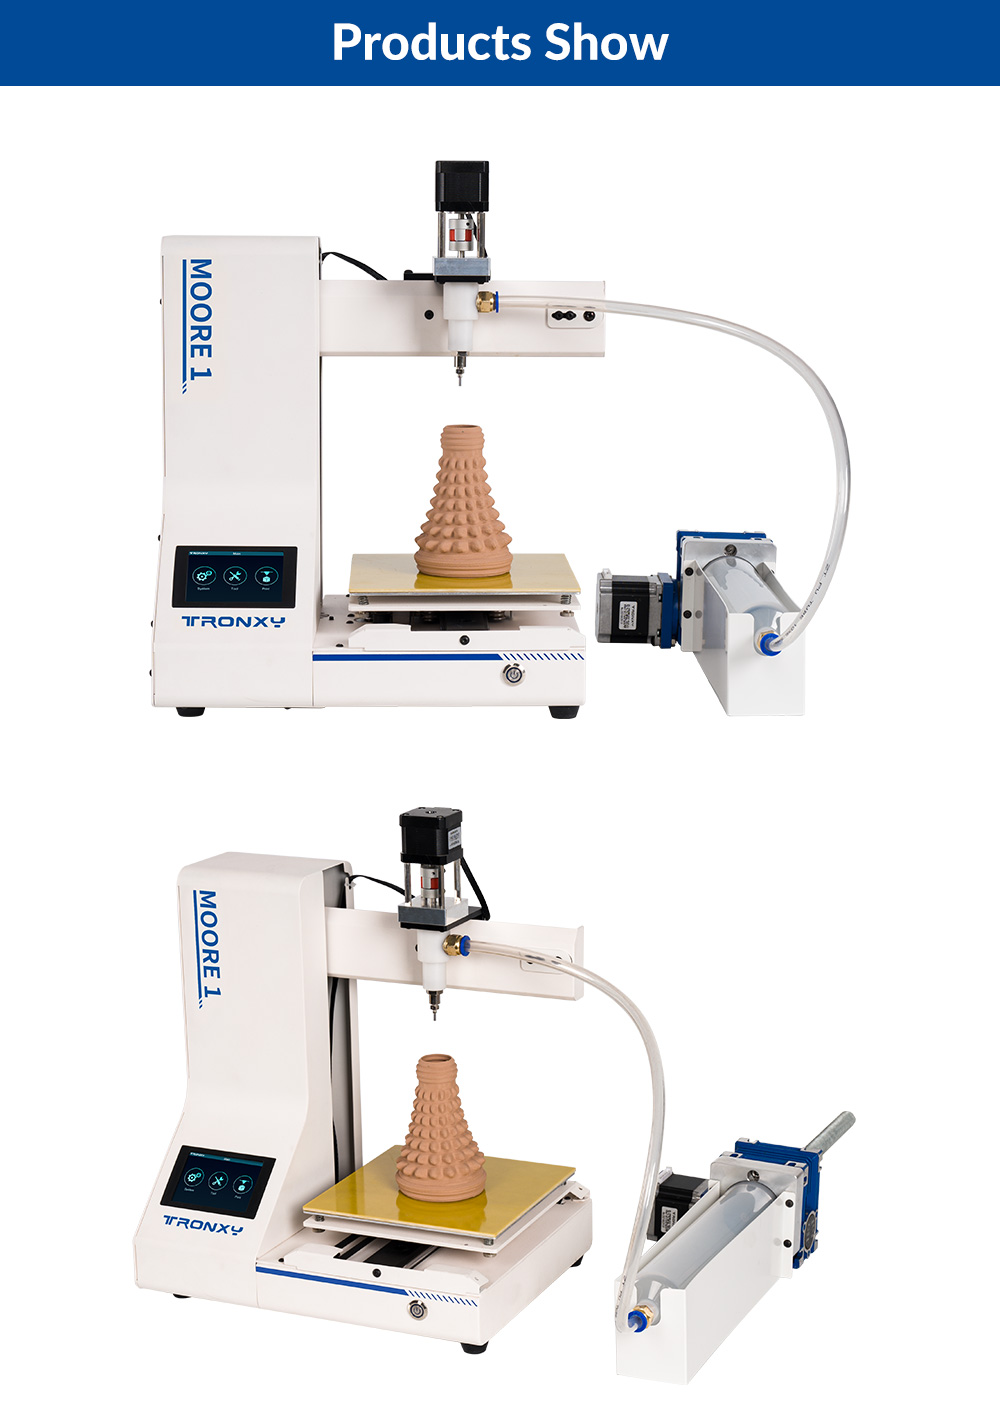 Tronxy Moore 1 Mini Clay 3D-Drucker, 40 mm/s Druckgeschwindigkeit, Druck fortsetzen, TMC2209, 180*180*180mm